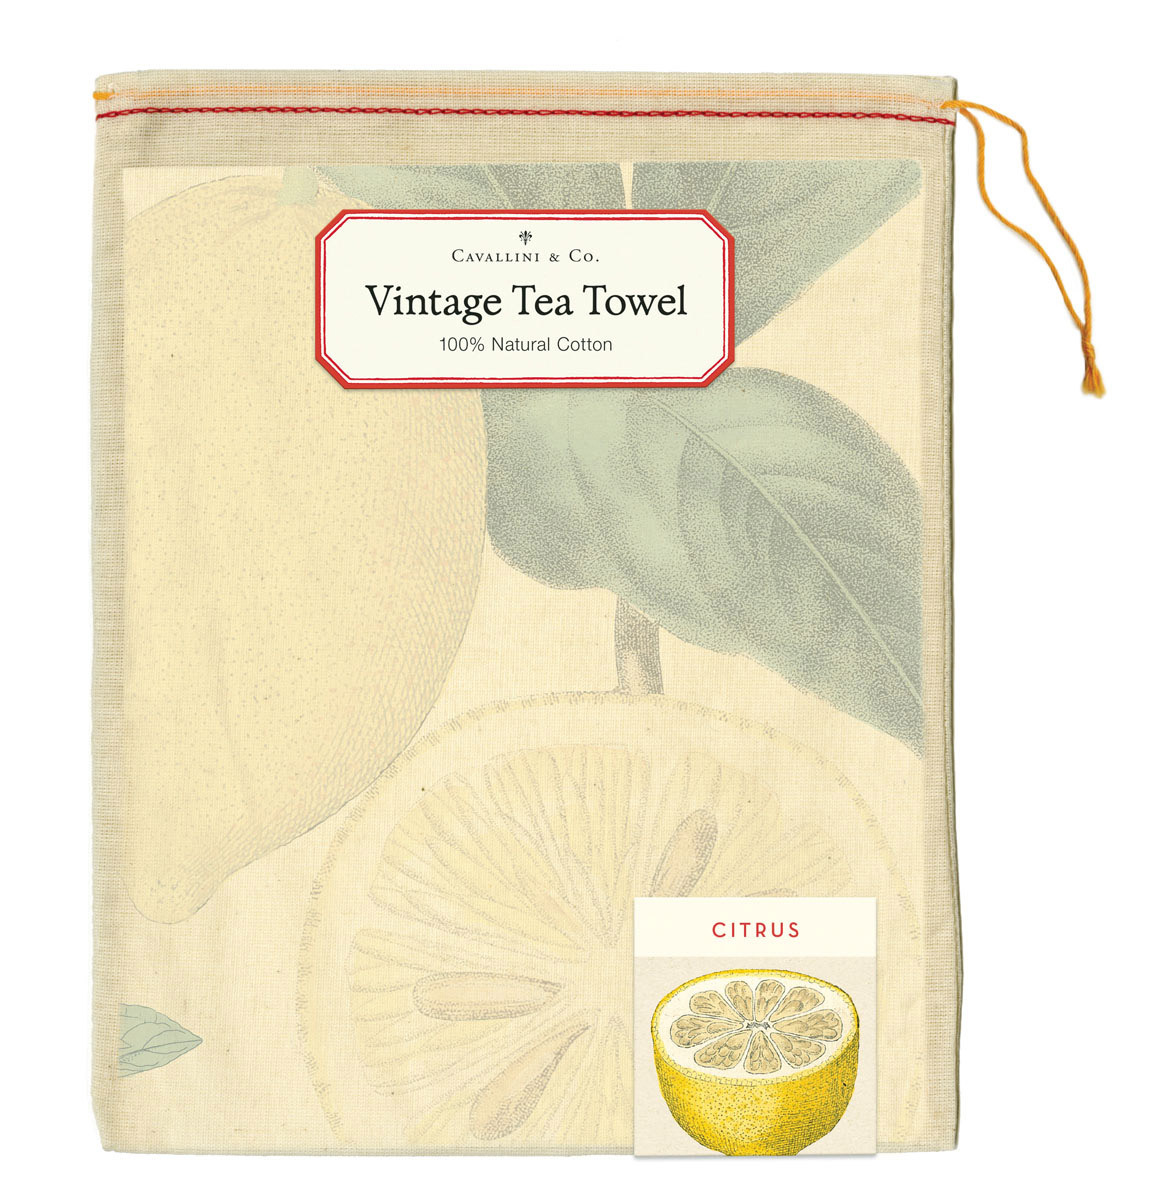 Cavallini Vintage Tea Towel - Citrus